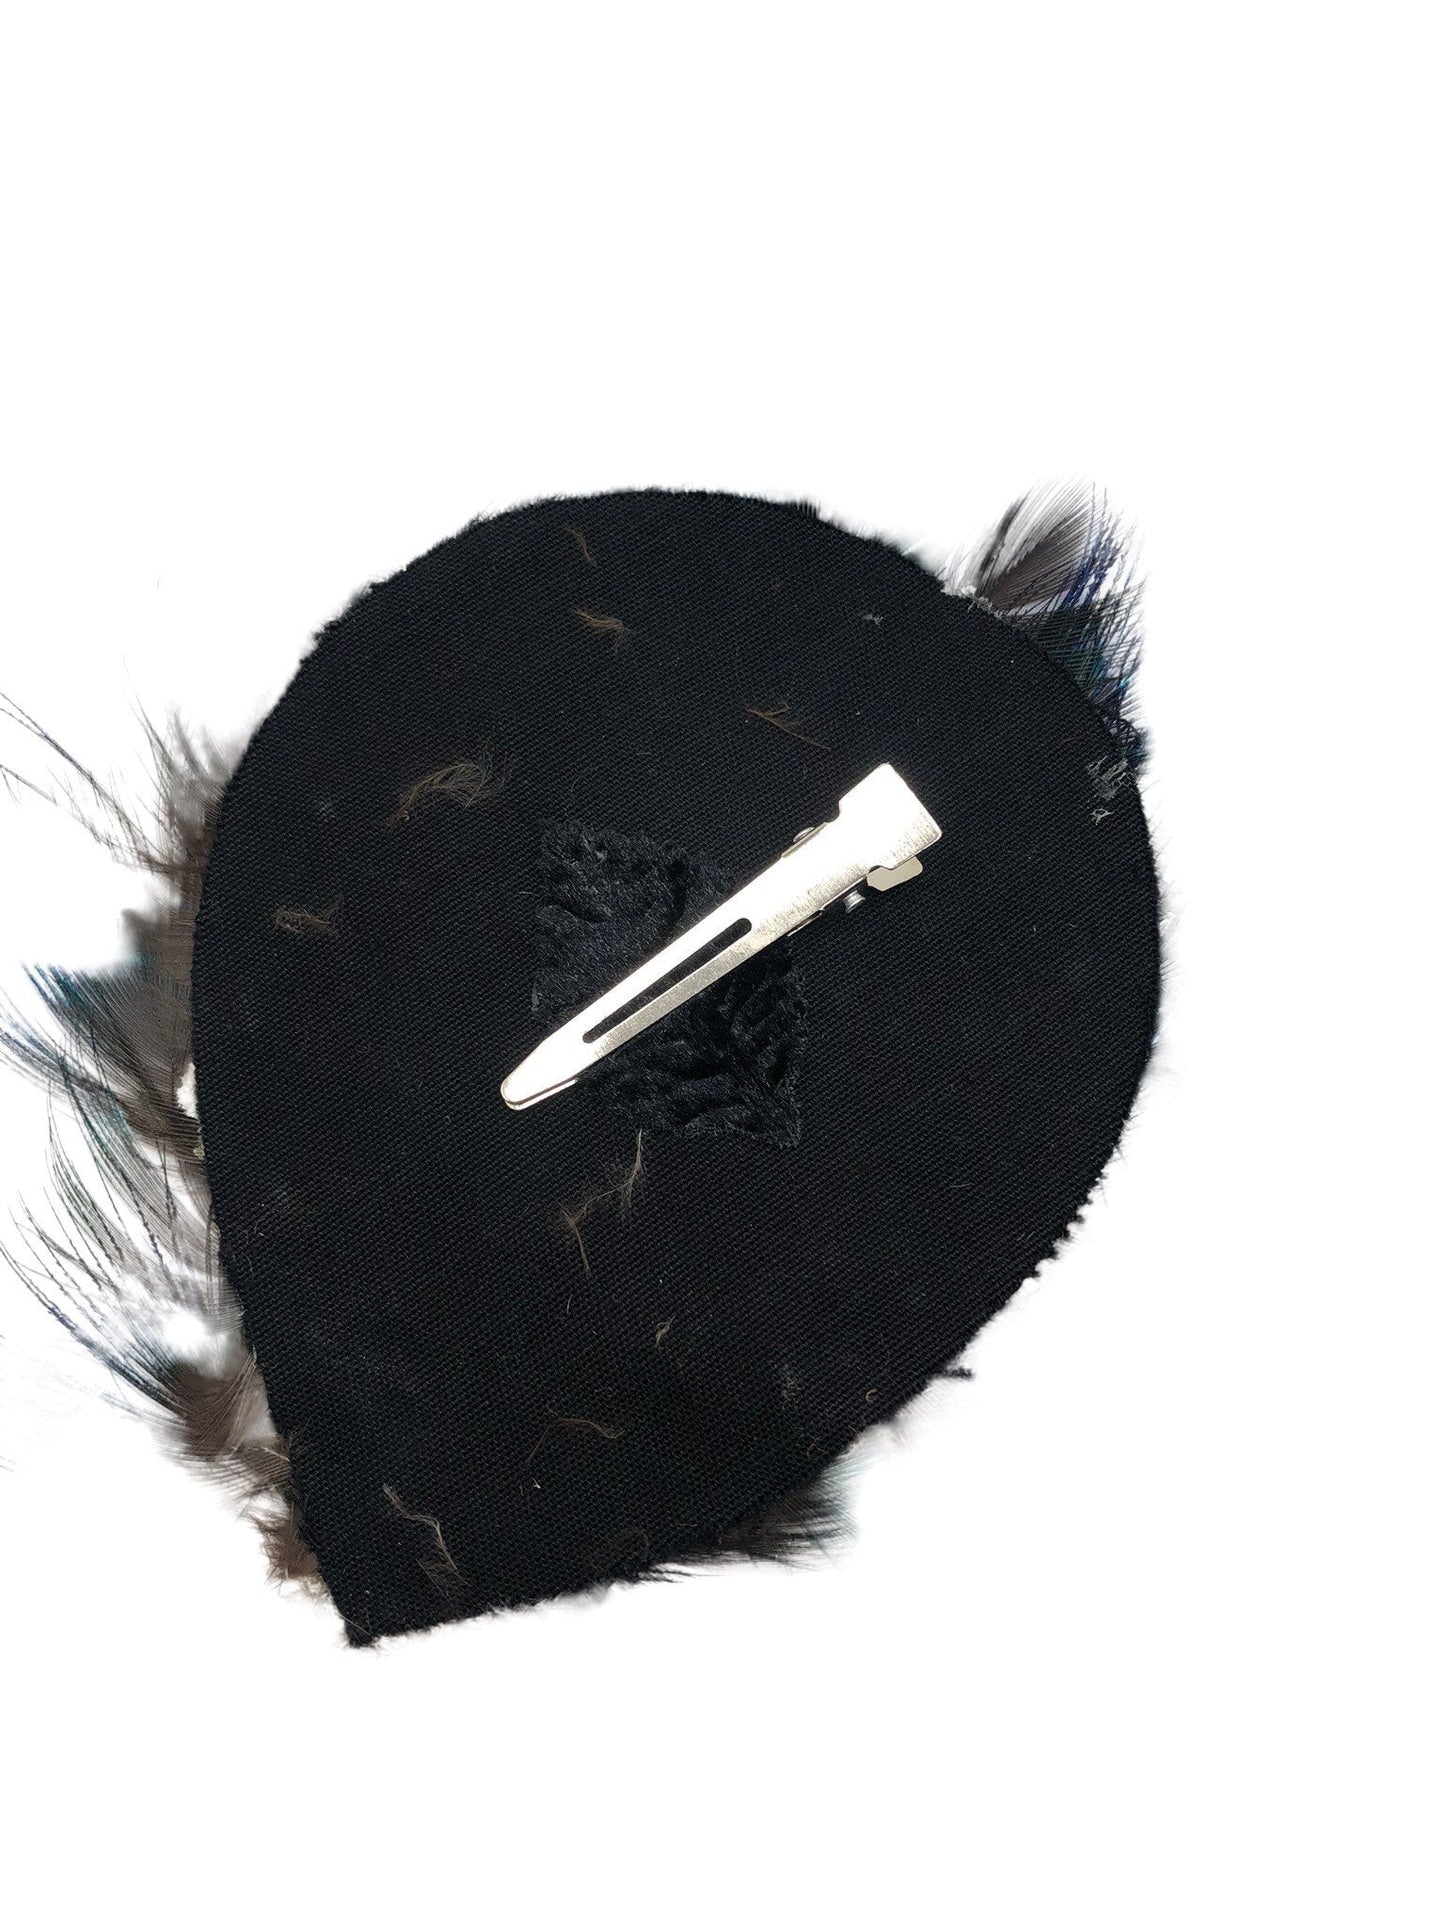 Karin's Garden Green Black Feather Pad Clip Approx 4" x 3" Clip Into Hair or clip onto Lapel